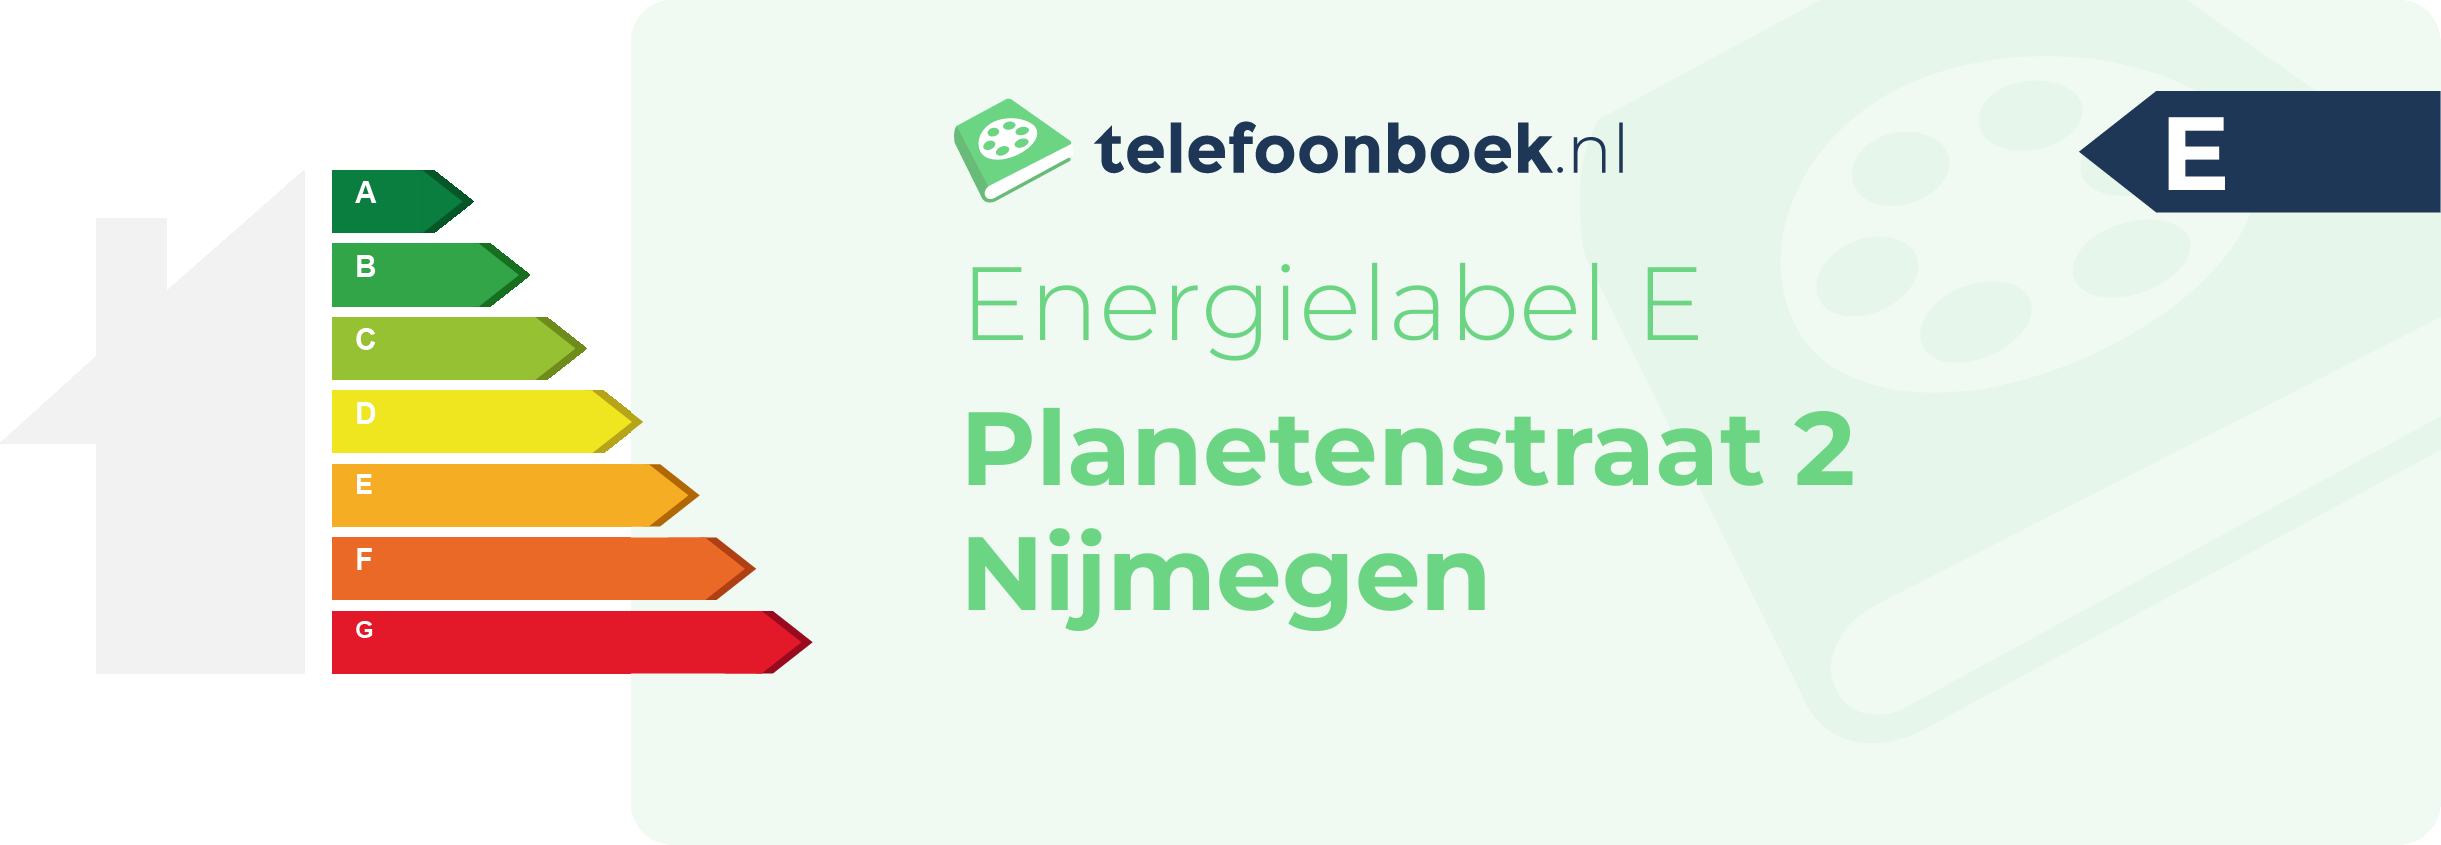 Energielabel Planetenstraat 2 Nijmegen